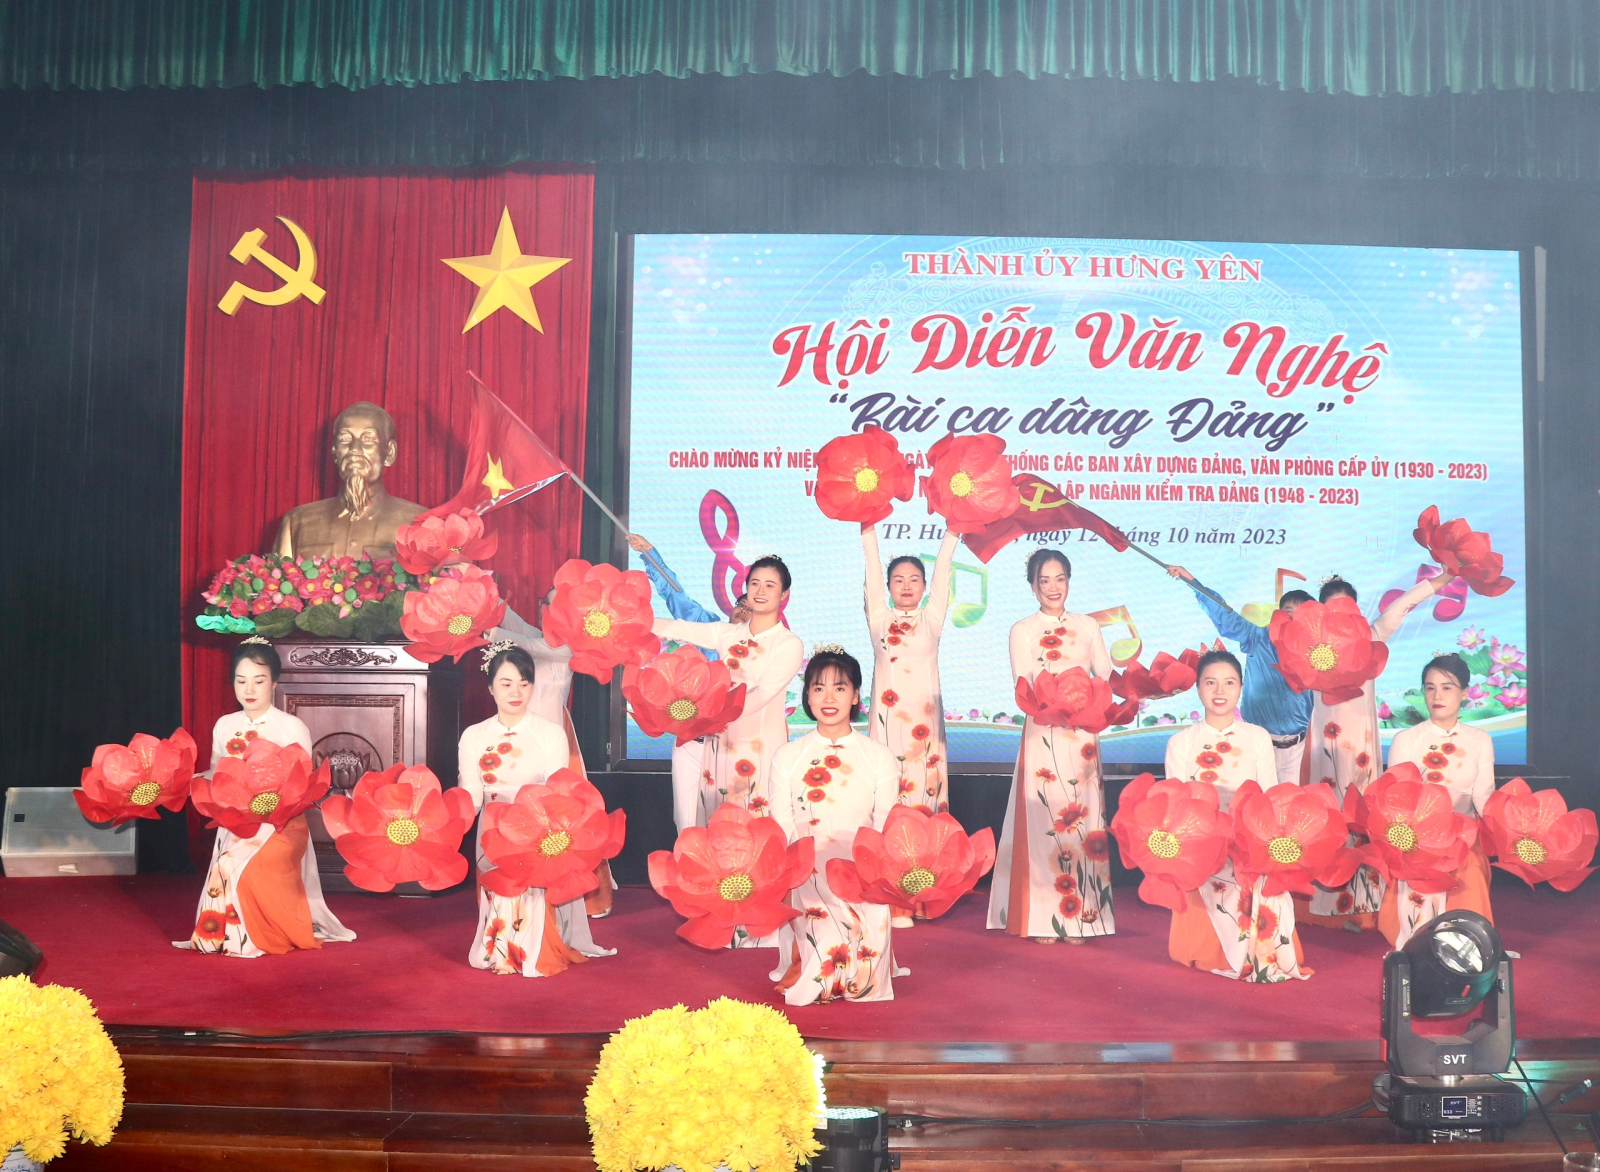 Thành phố Hưng Yên tổ chức Hội diễn văn nghệ  chào mừng kỷ niệm Ngày truyền thống các Ban Đảng